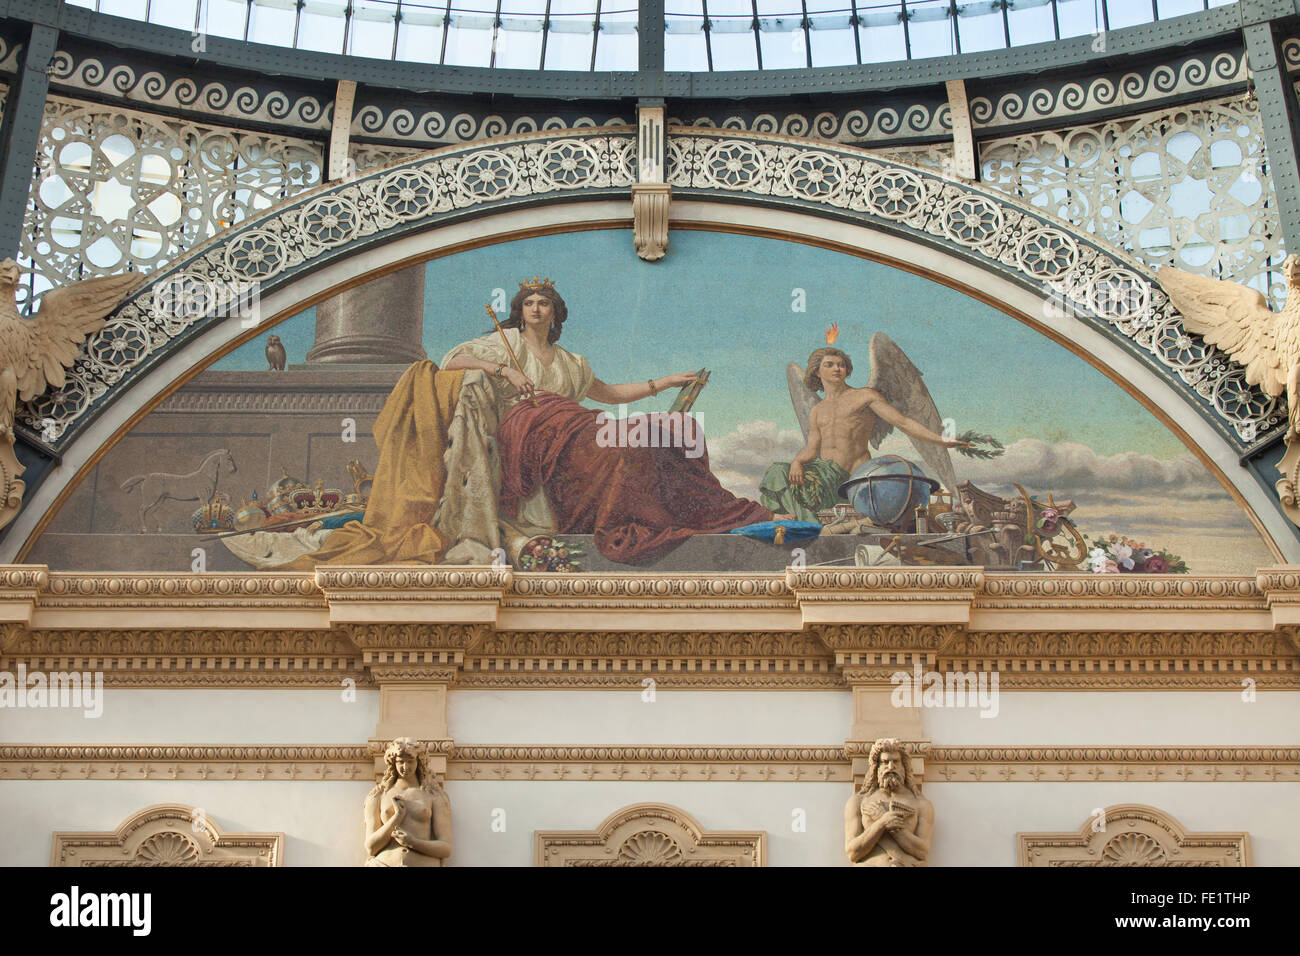 Europa. Allegorische Mosaik gestaltet von Angelo Pietrasanta in der Galleria Vittorio Emanuele II in Mailand, Lombardei, Italien. Stockfoto